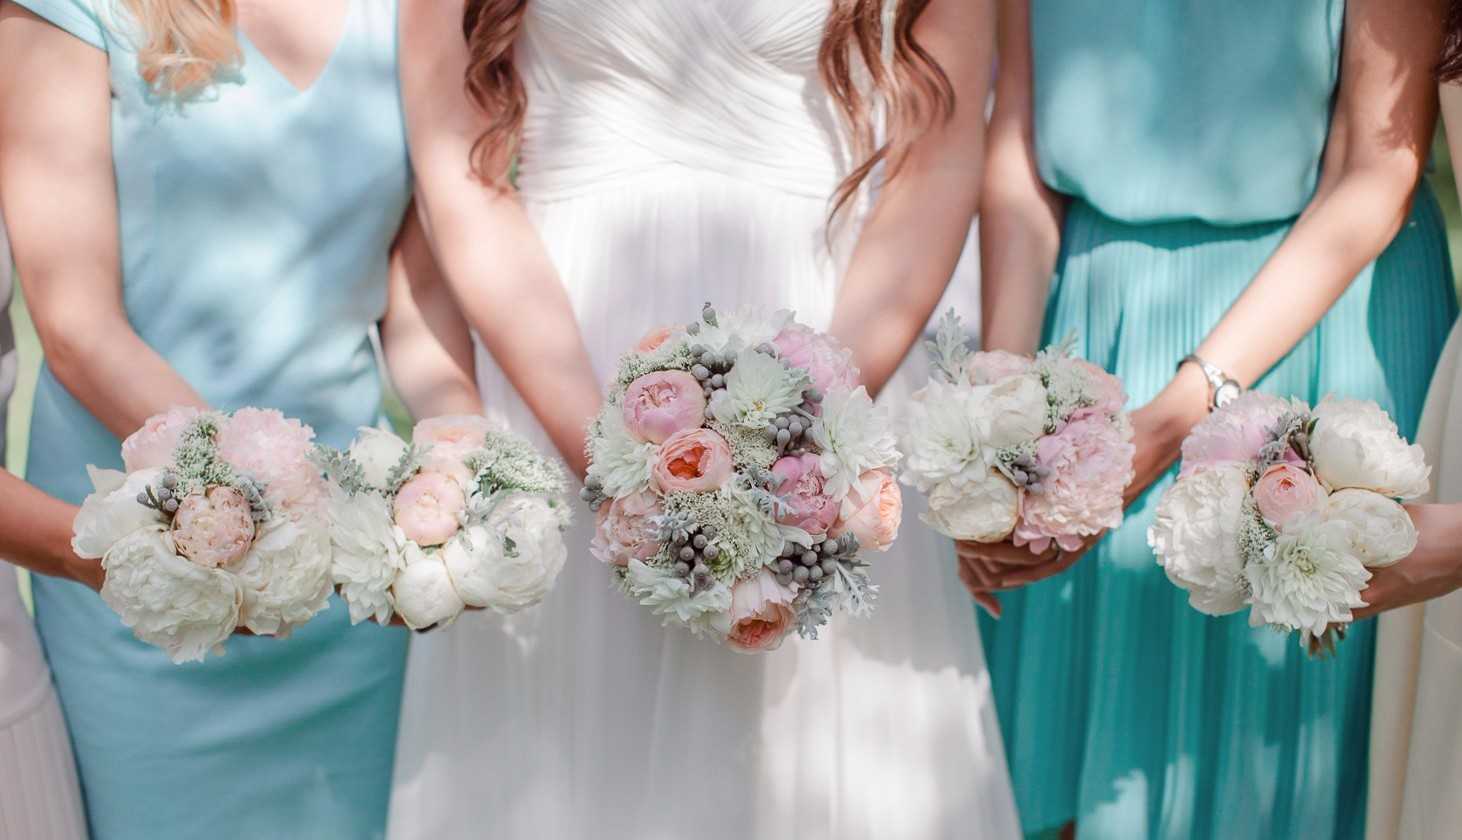 Модный цвет свадьбы в 2020 году: топ идеальных оттенков фото - модный журнал